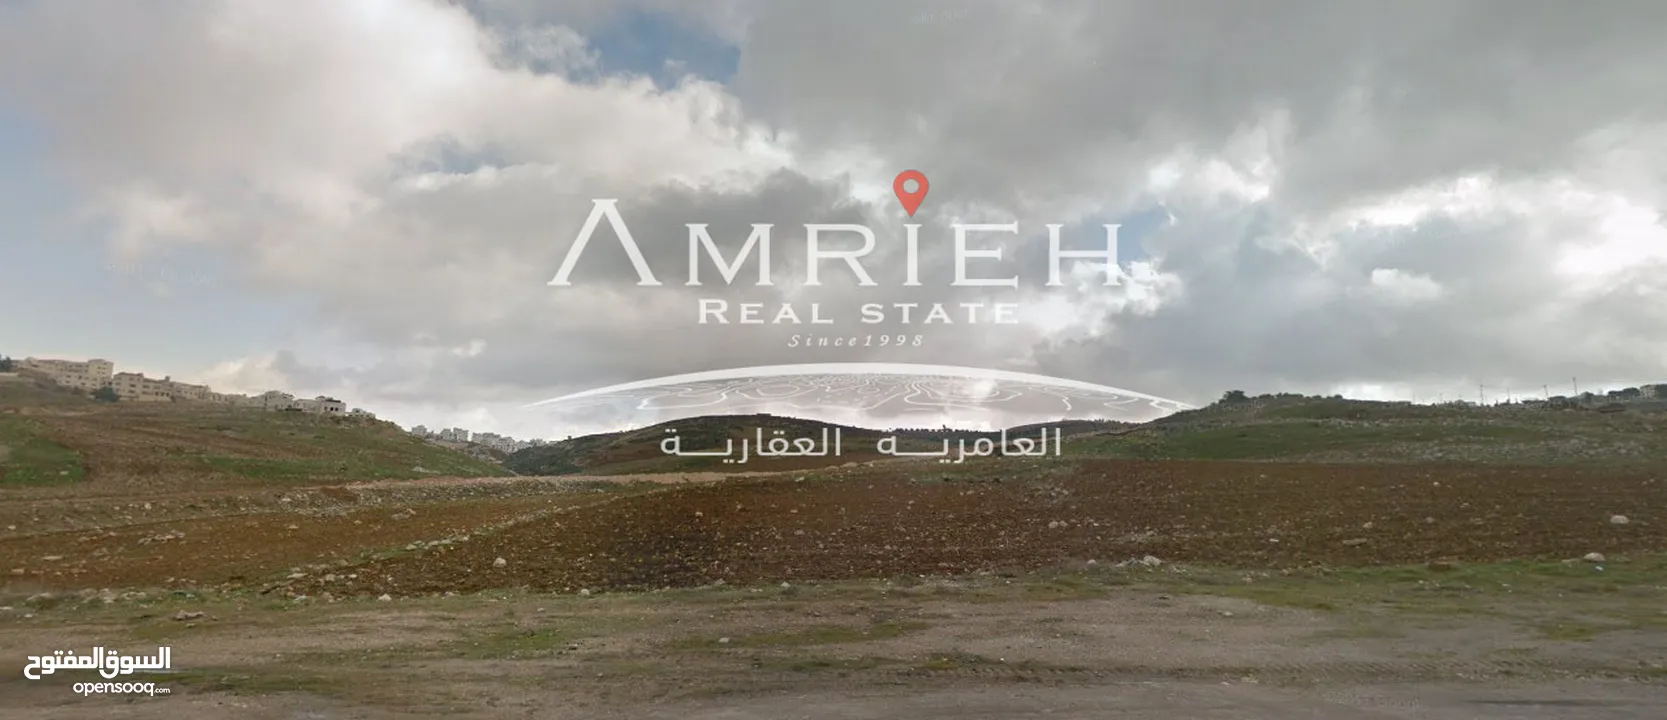 ارض 700 م للبيع في رجم عميش / بالقرب من منتجع ايفيريست .